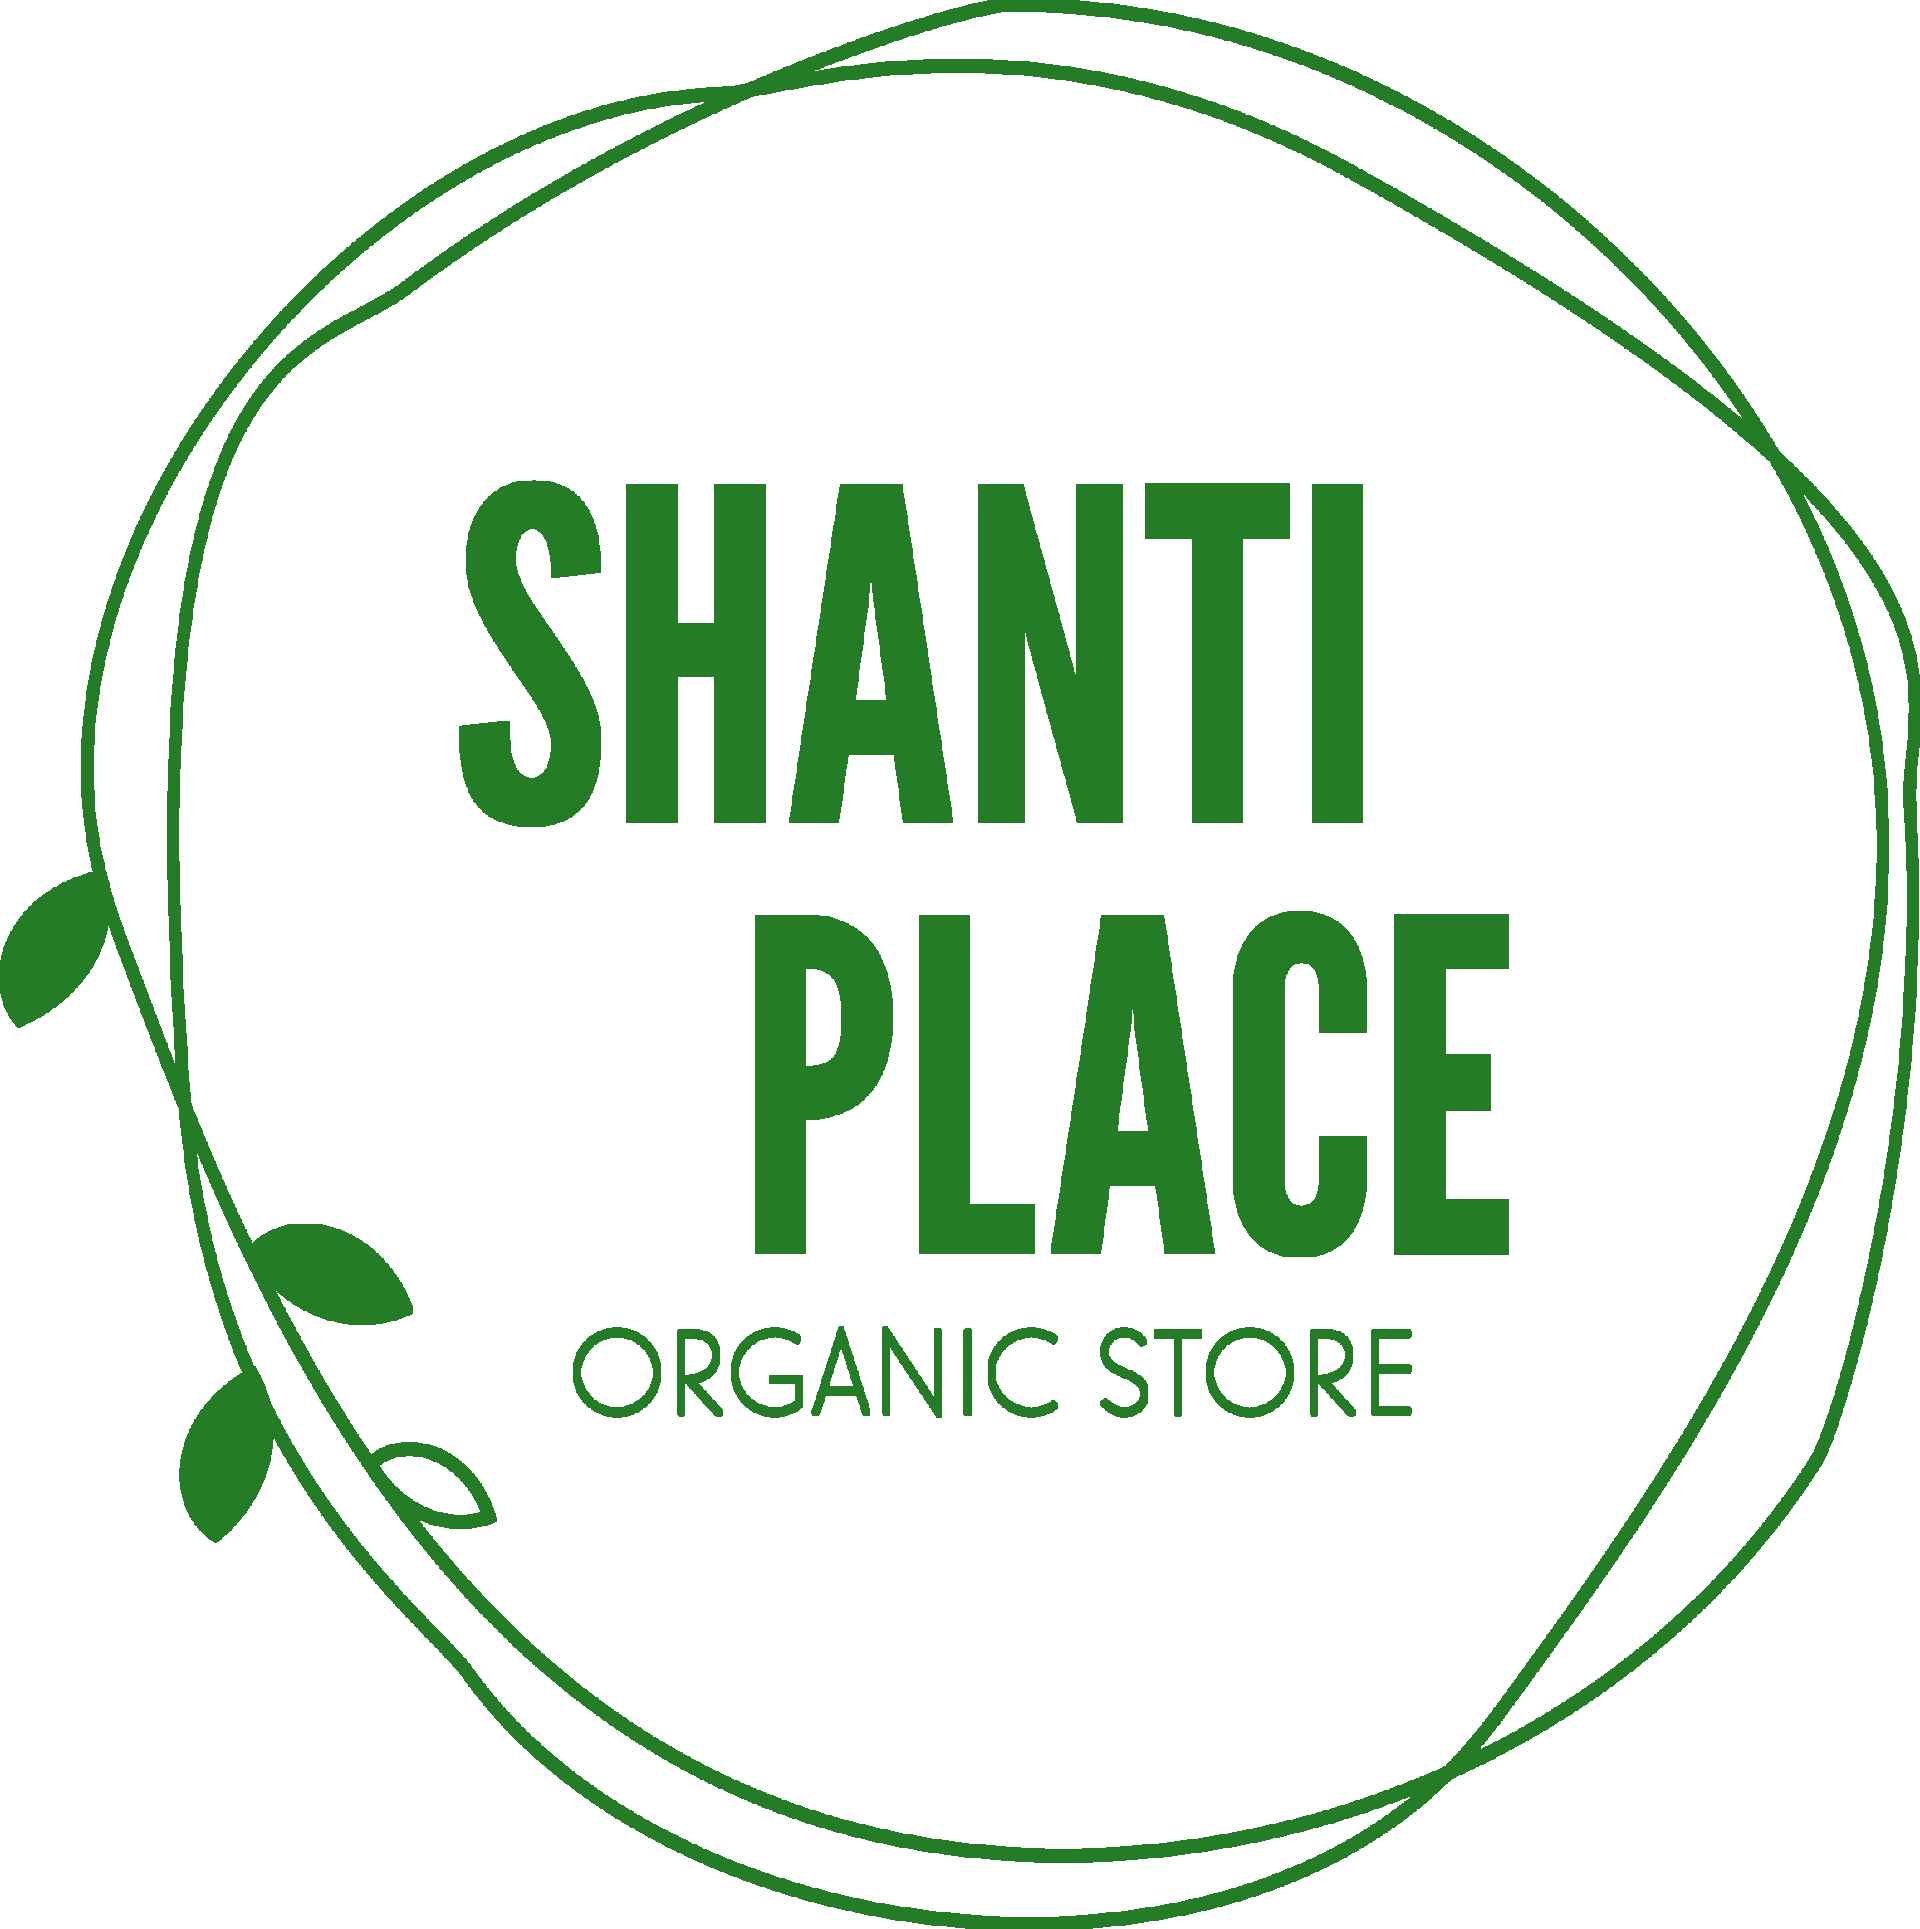 Shanti Place